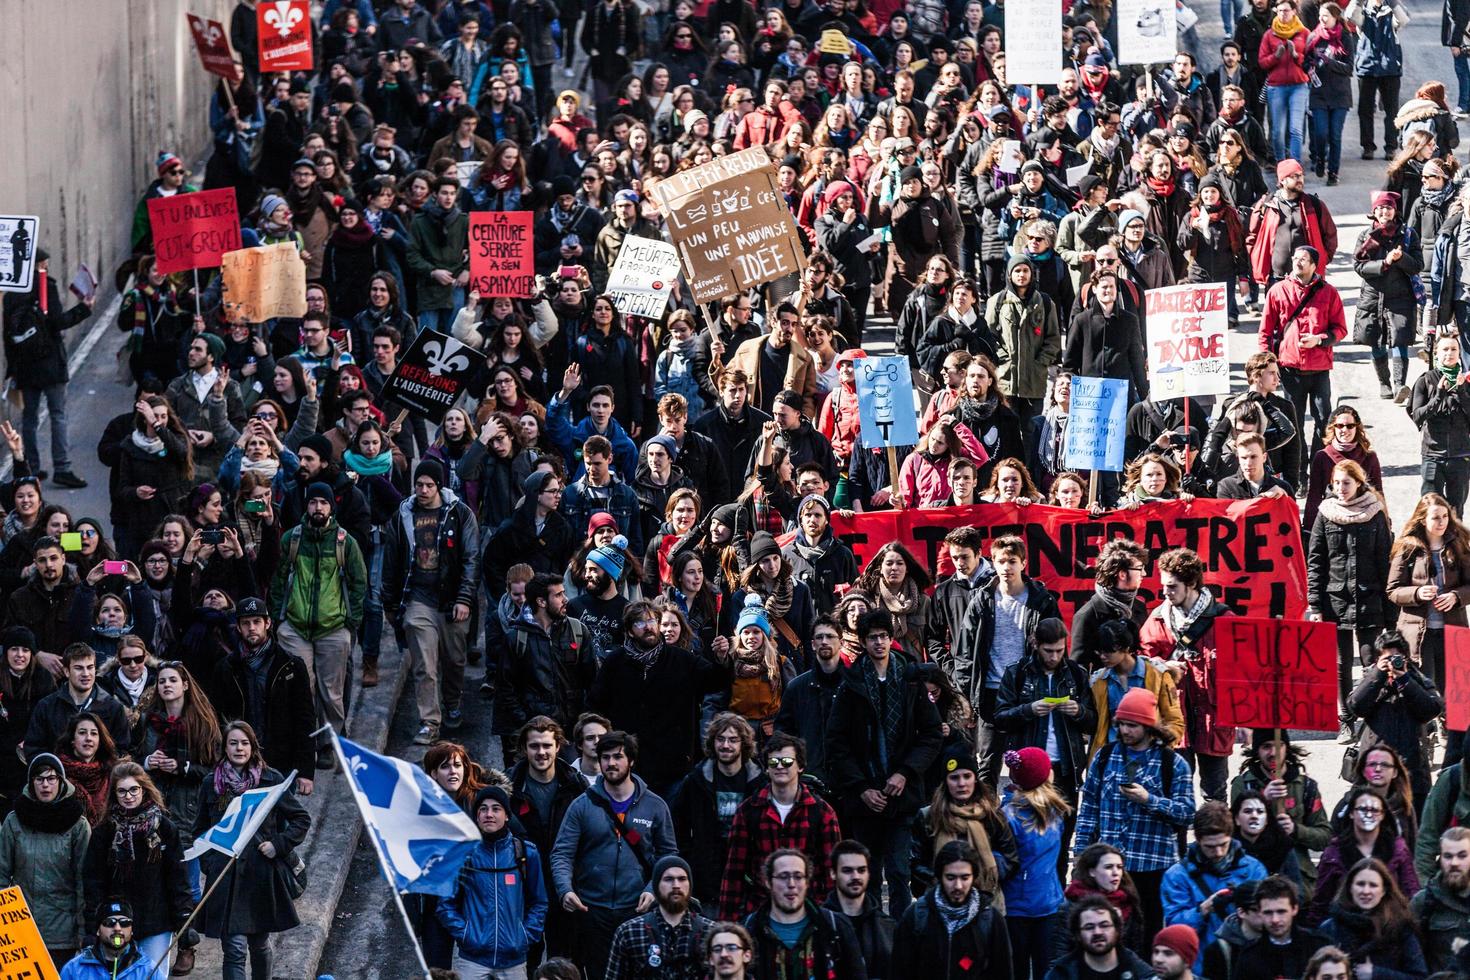 Montreal, Canadá 02 de abril de 2015 - vista superior de los manifestantes caminando por las calles abarrotadas foto